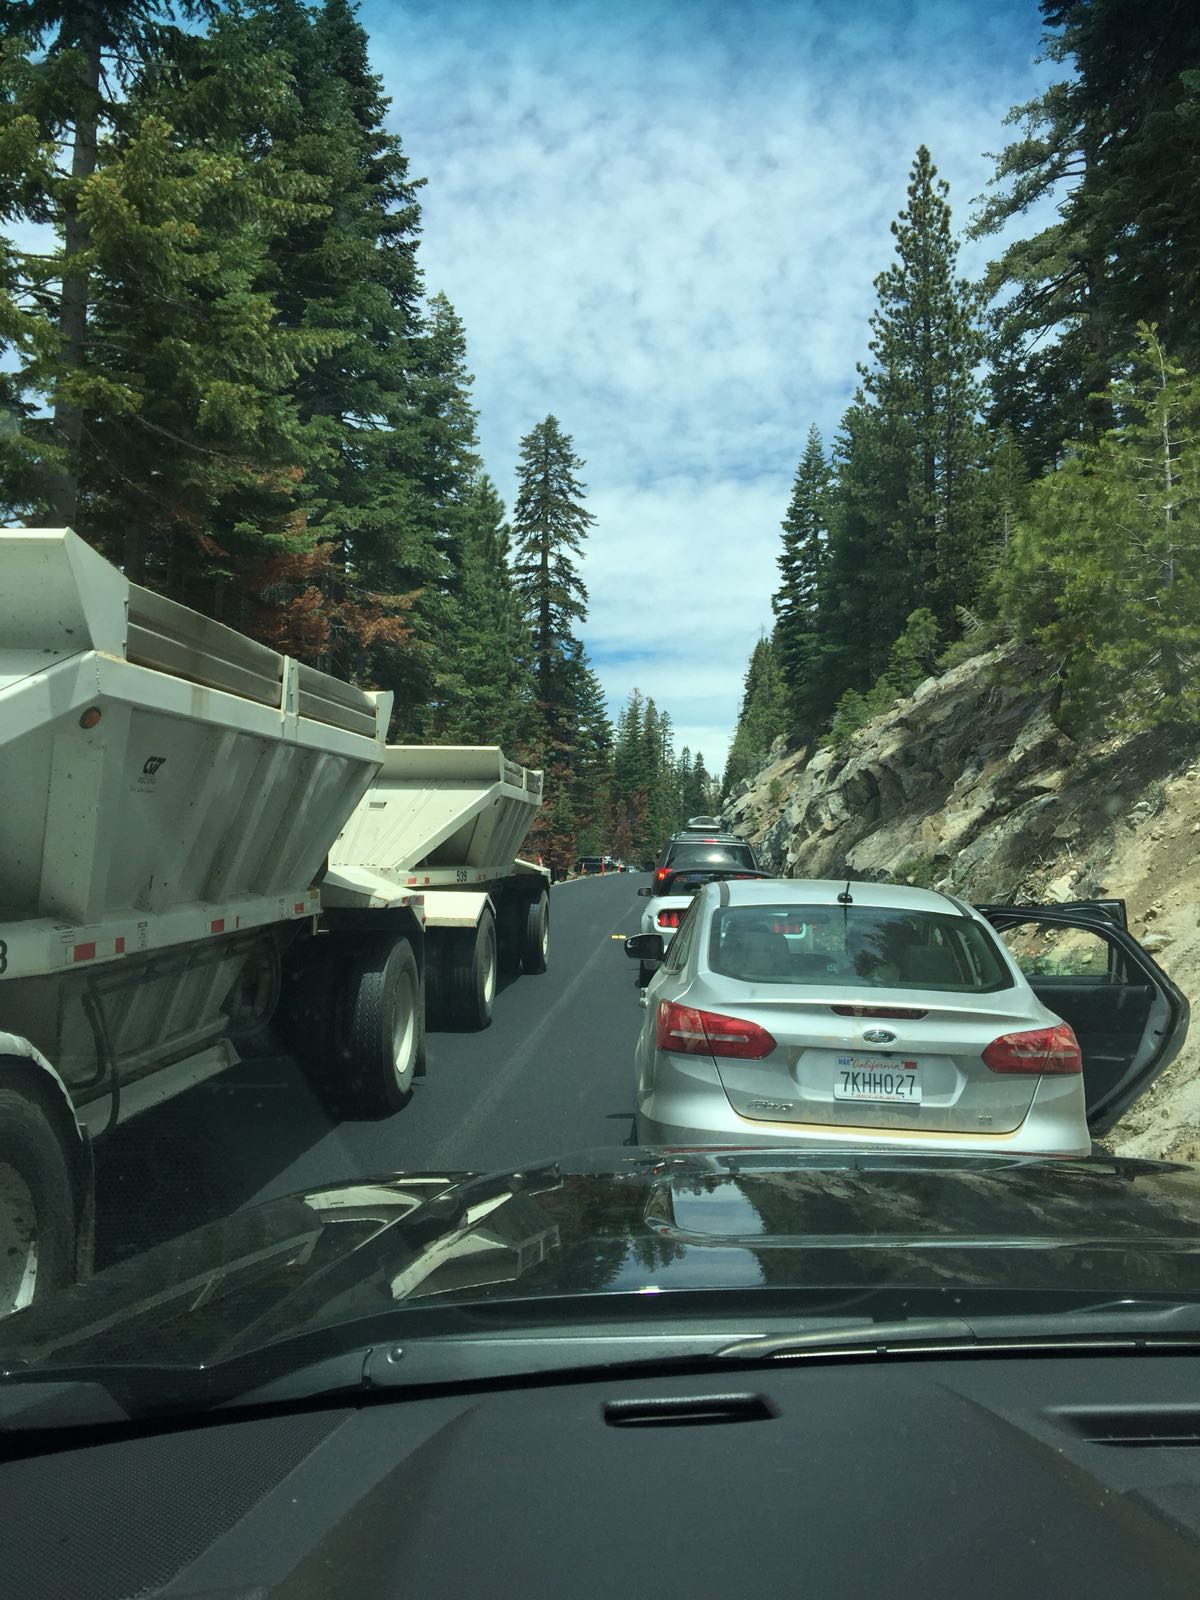 自驾绝对是这次Yosemite之行的一大乐趣来源 下过赛道 飙过街车